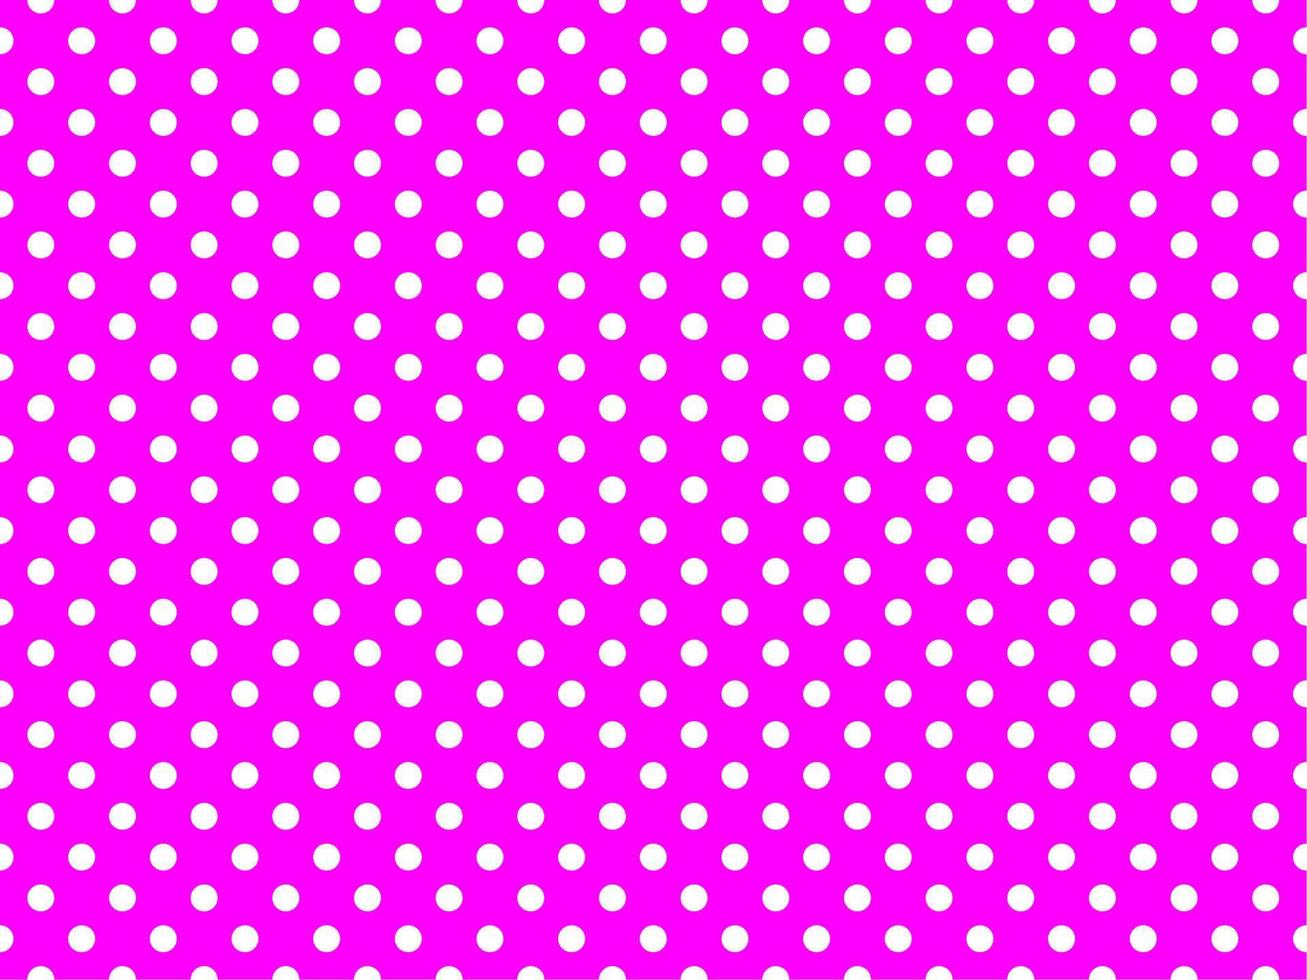 white polka dots over fuchsia background vector